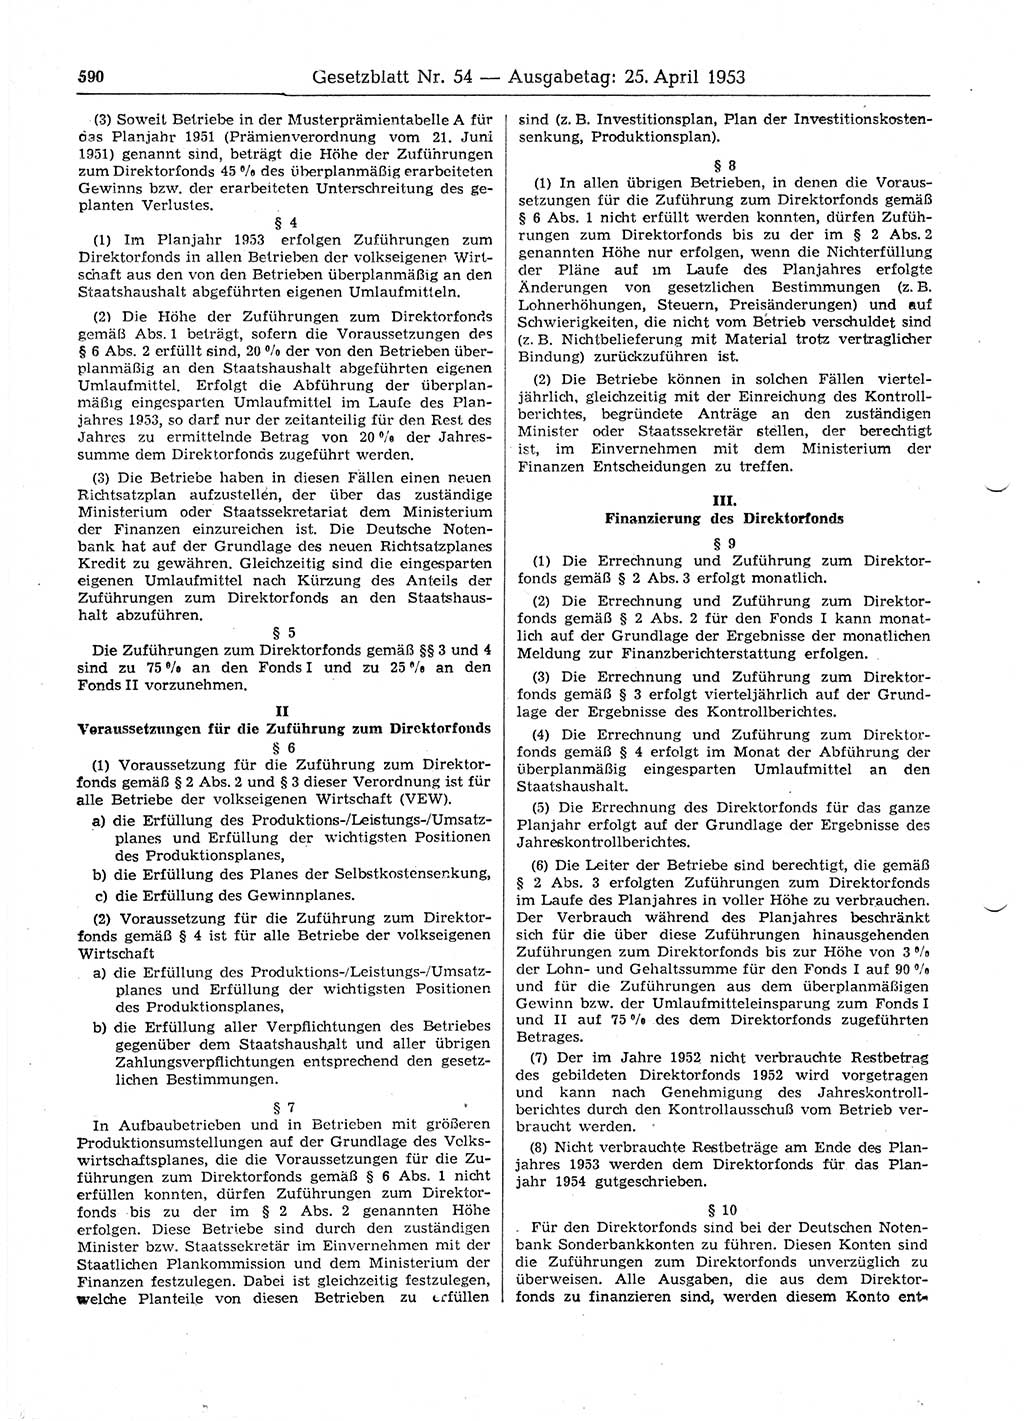 Gesetzblatt (GBl.) der Deutschen Demokratischen Republik (DDR) 1953, Seite 590 (GBl. DDR 1953, S. 590)